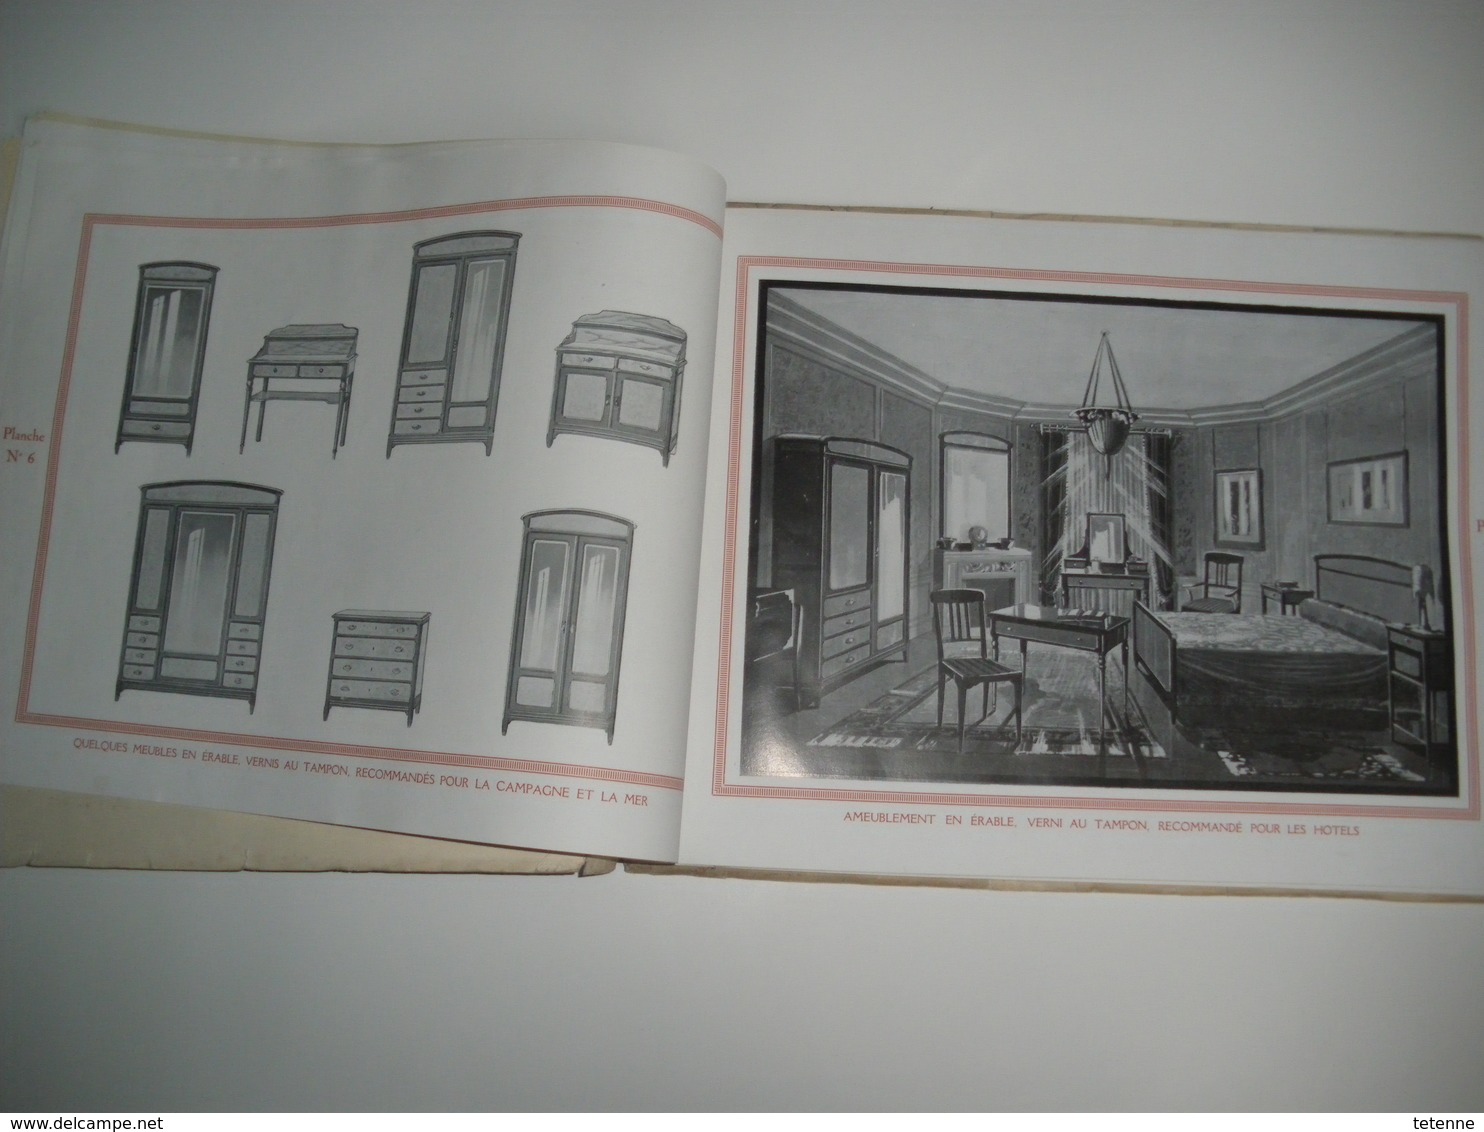 catalogue AU BON MEUBLE 30 rue des Carmellites CAEN J MACAIRE et cie 67 planches d' interrieur .art déco 1925 1930